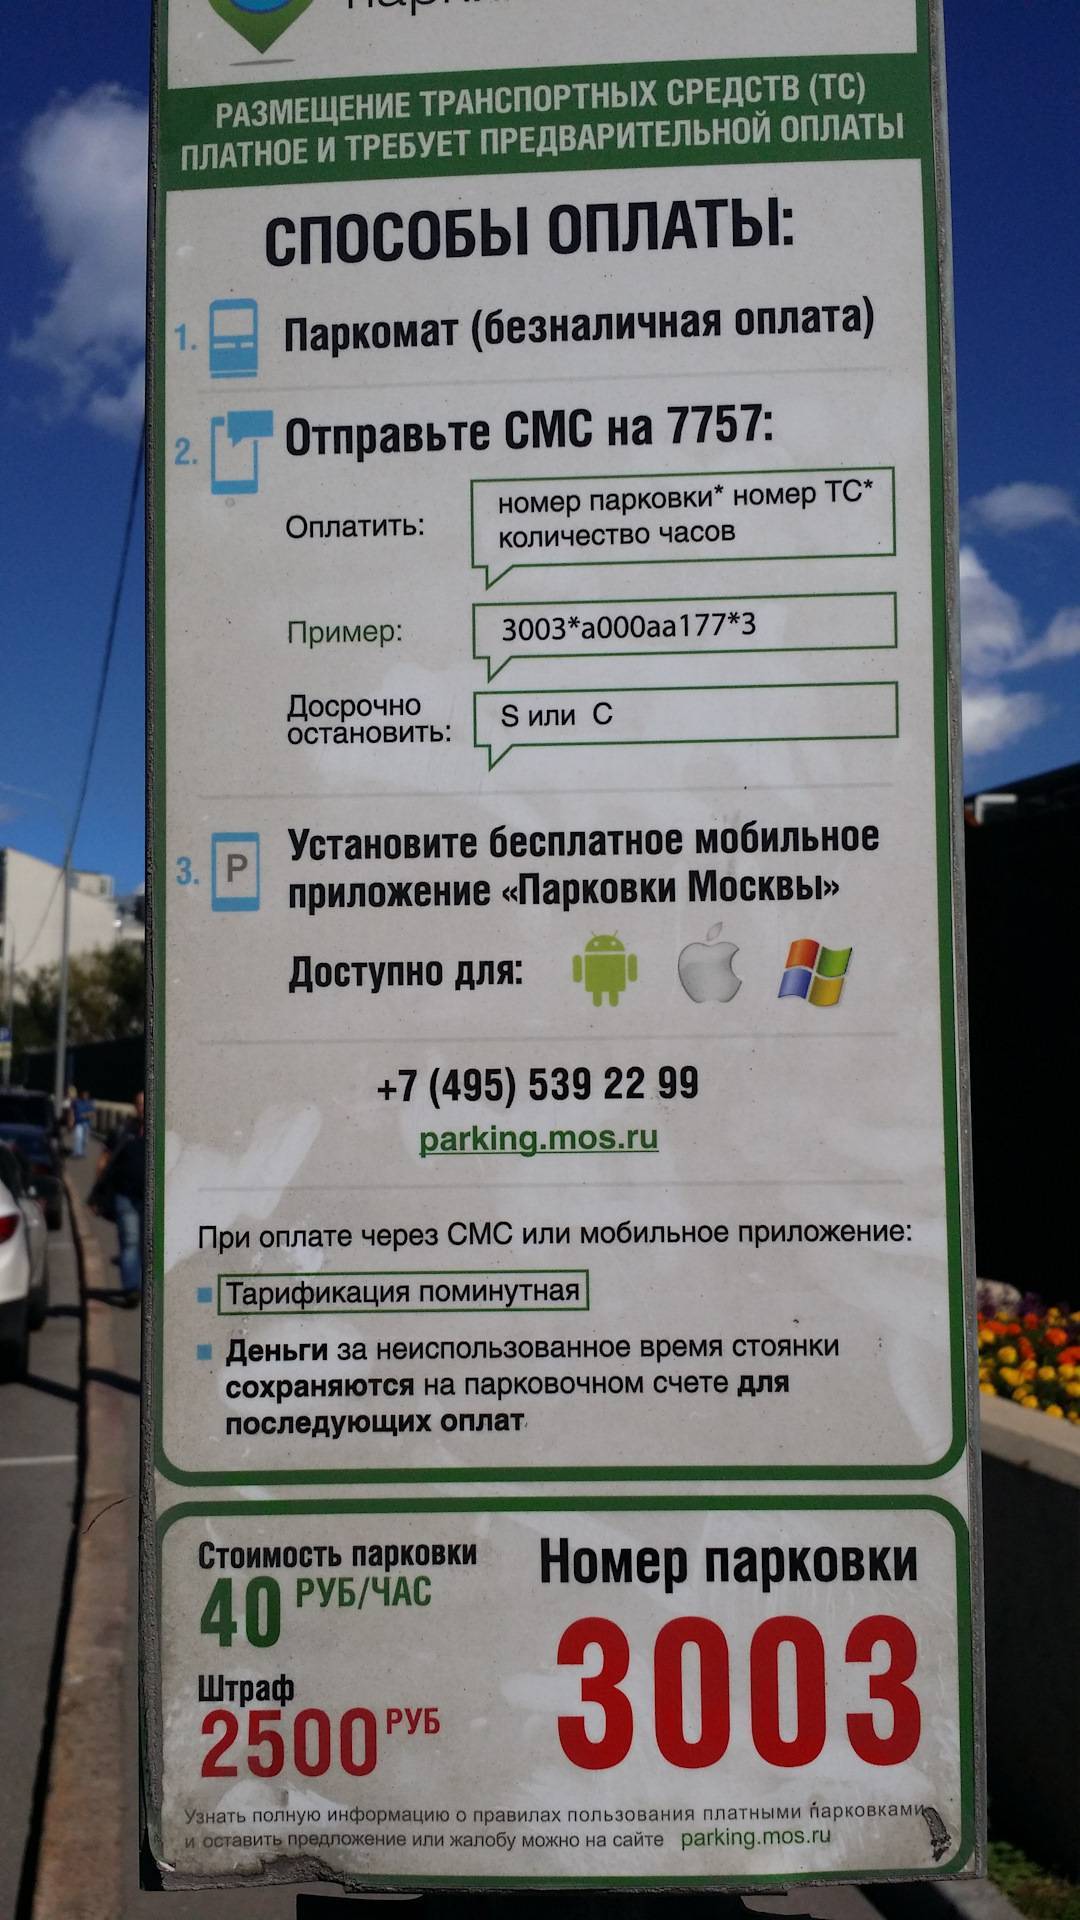 Как оплачивать парковку в москве - все способы тарифкин.ру
как оплачивать парковку в москве - все способы